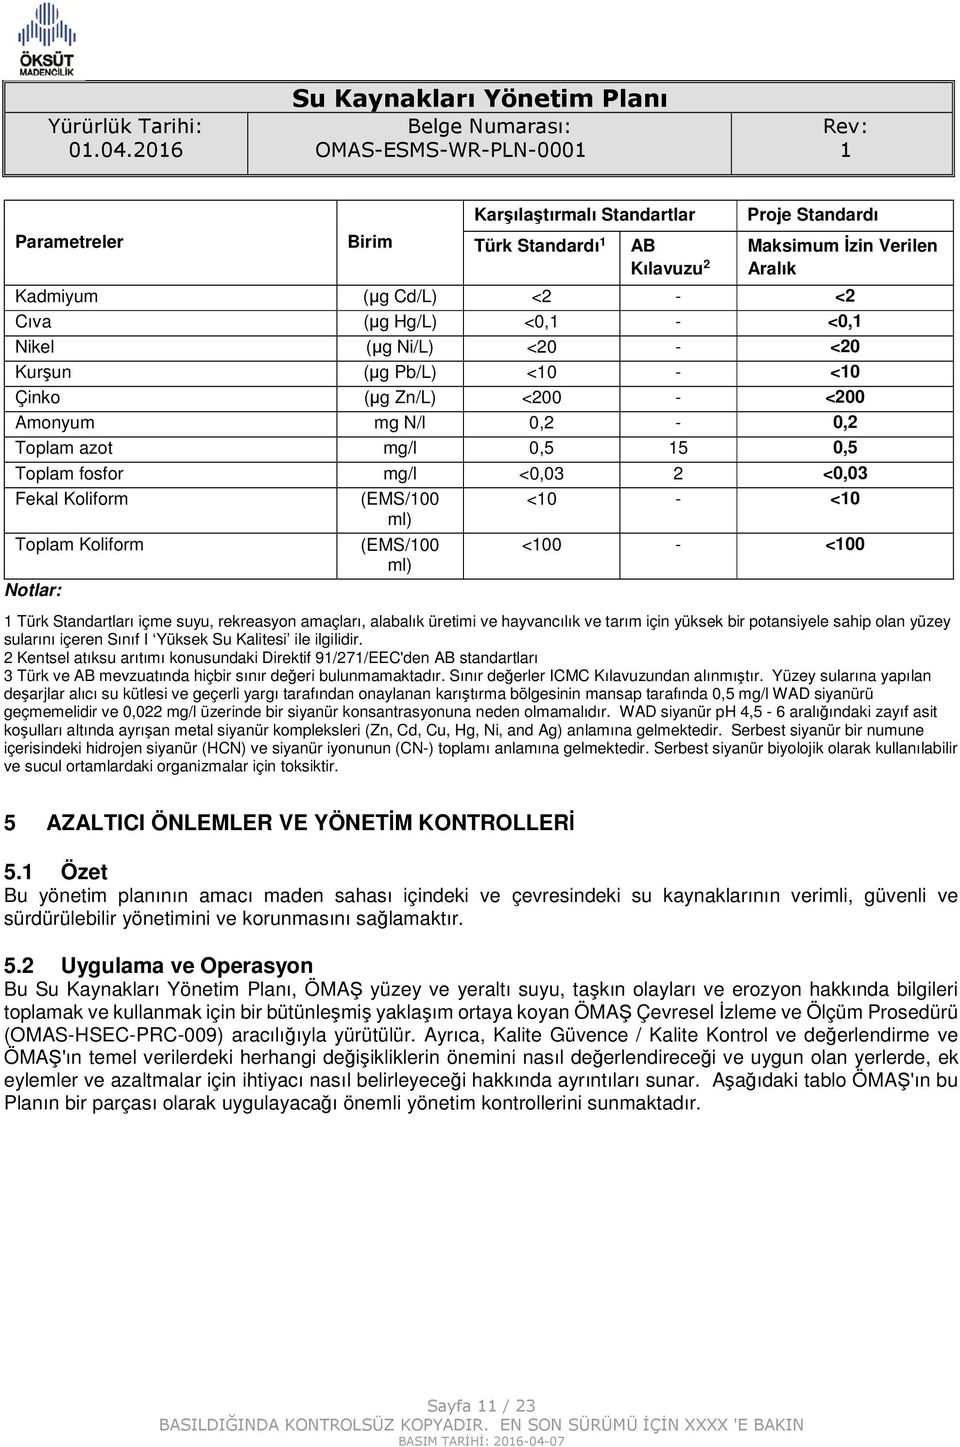 ml) Toplam Koliform (EMS/00 <00 - <00 ml) Notlar: Türk Standartları içme suyu, rekreasyon amaçları, alabalık üretimi ve hayvancılık ve tarım için yüksek bir potansiyele sahip olan yüzey sularını